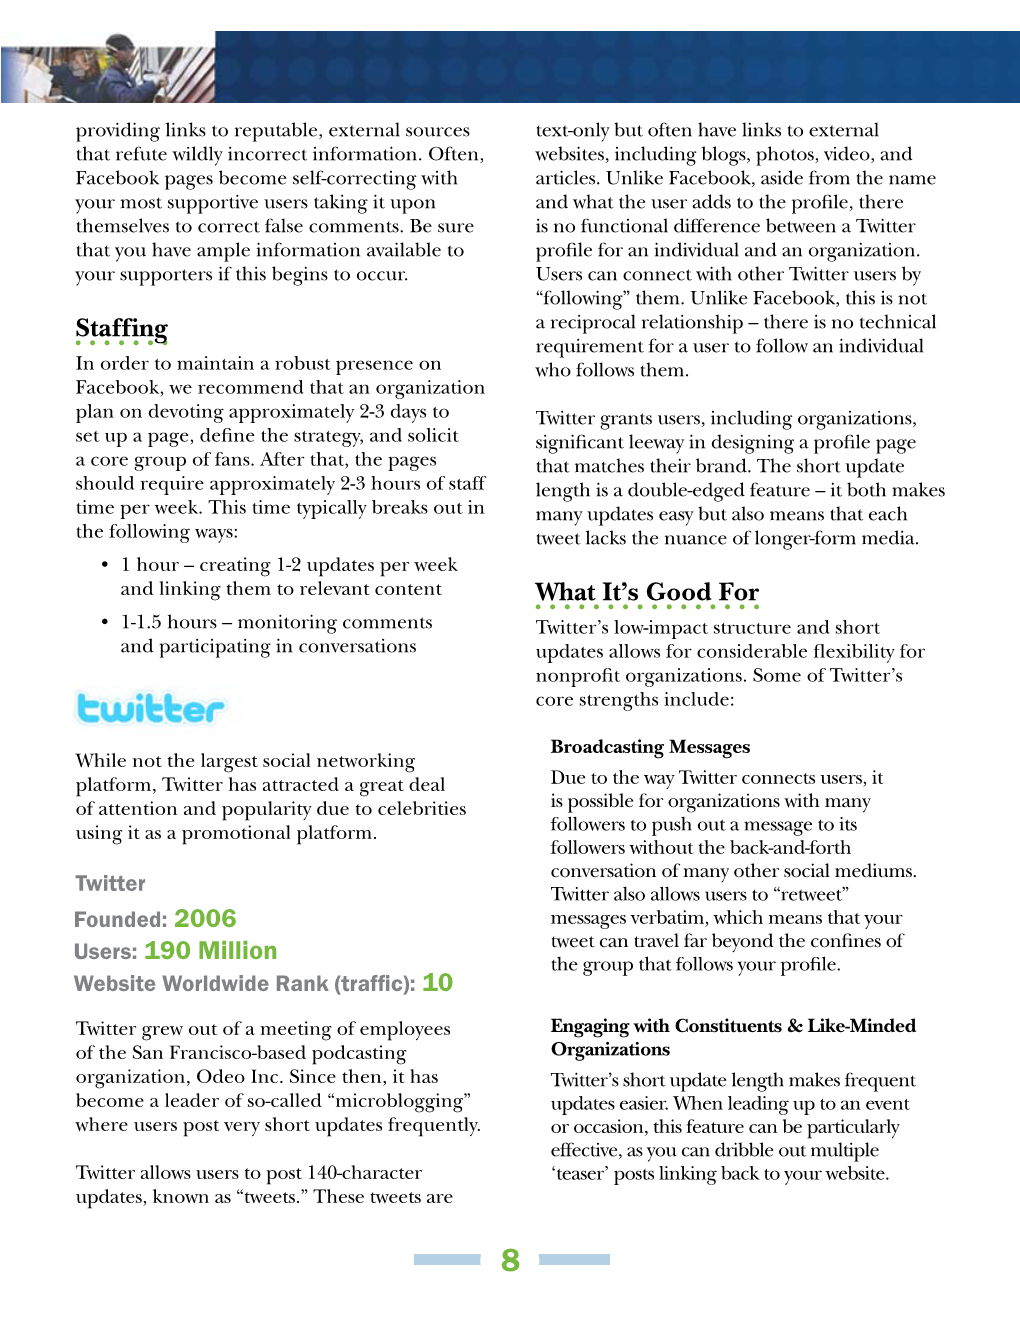 Twitter Social Media Guide